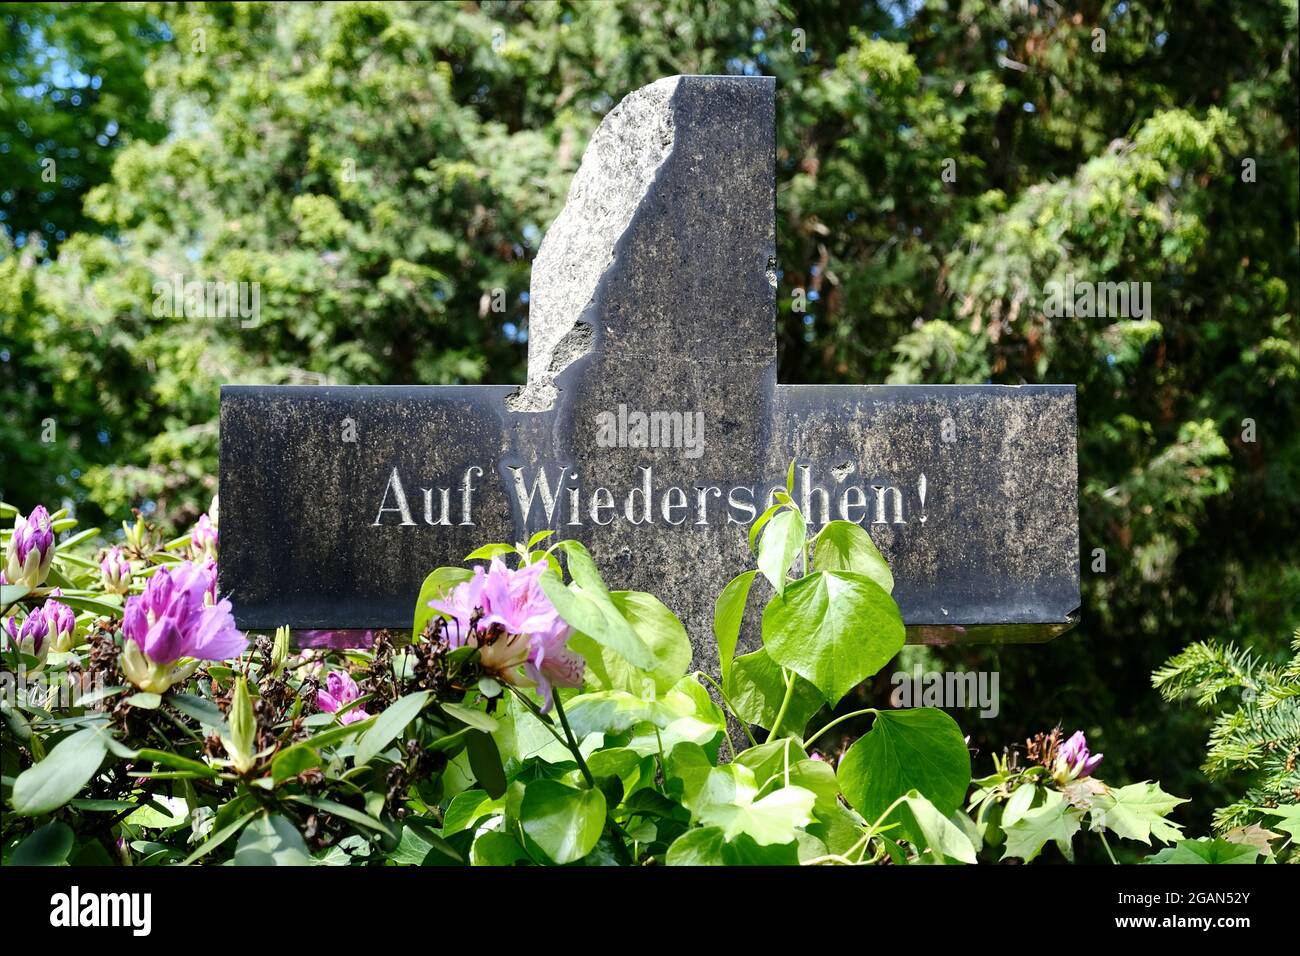 Berlin, Allemagne, 2 juin 202, pierre tombale avec inscription originale: 'Auf Wiedersehen' ('Au revoir') Banque D'Images